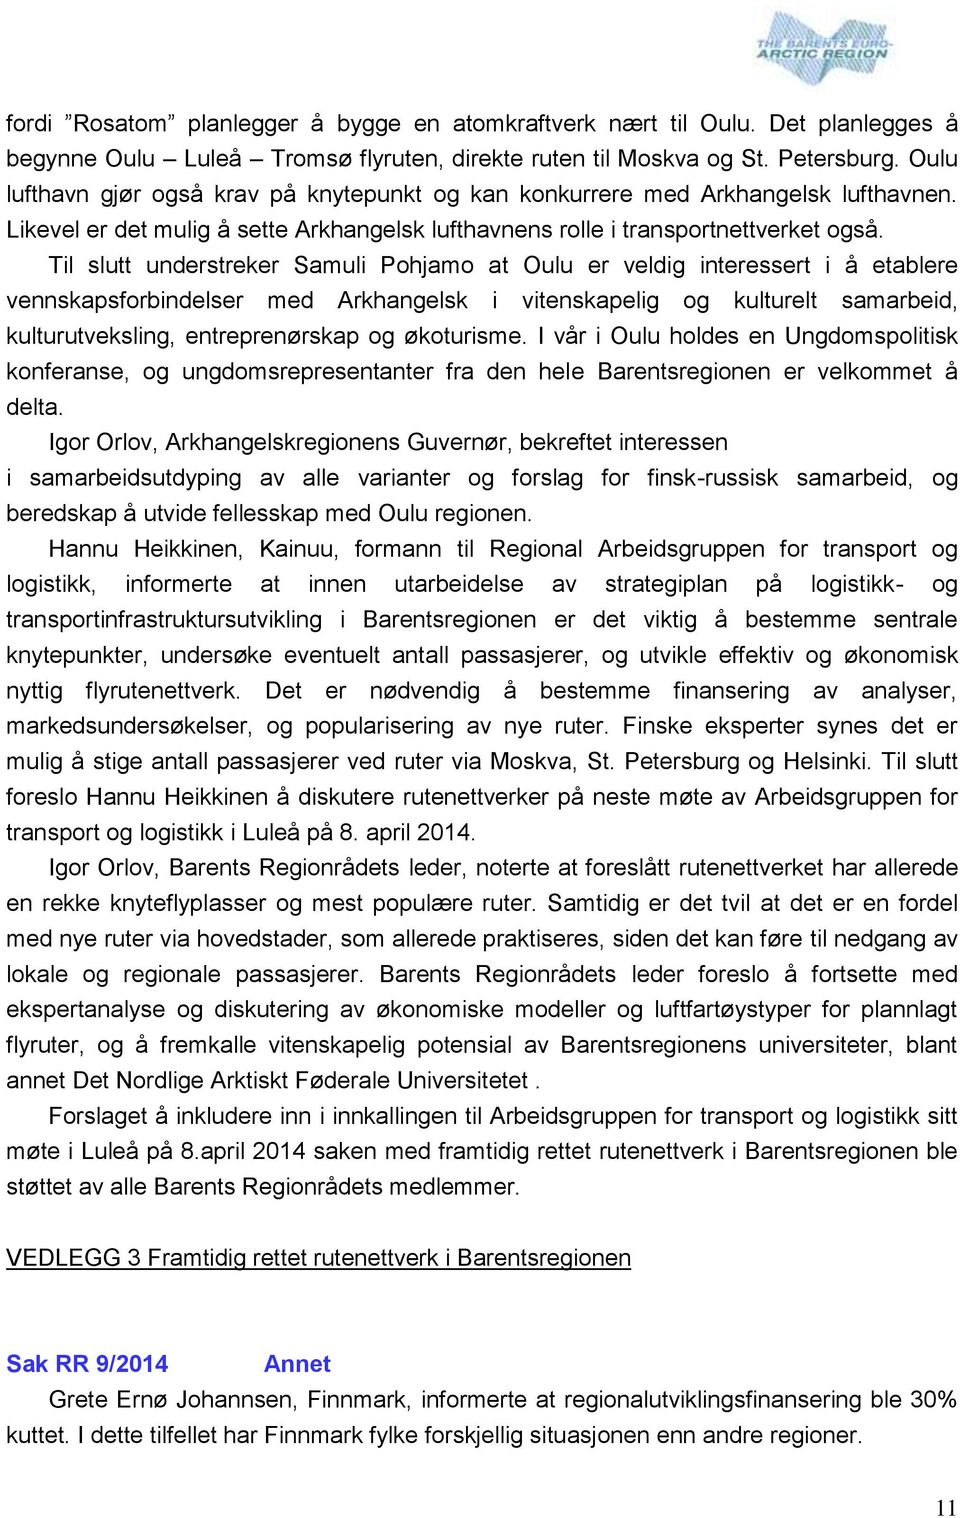 Til slutt understreker Samuli Pohjamo at Oulu er veldig interessert i å etablere vennskapsforbindelser med Arkhangelsk i vitenskapelig og kulturelt samarbeid, kulturutveksling, entreprenørskap og